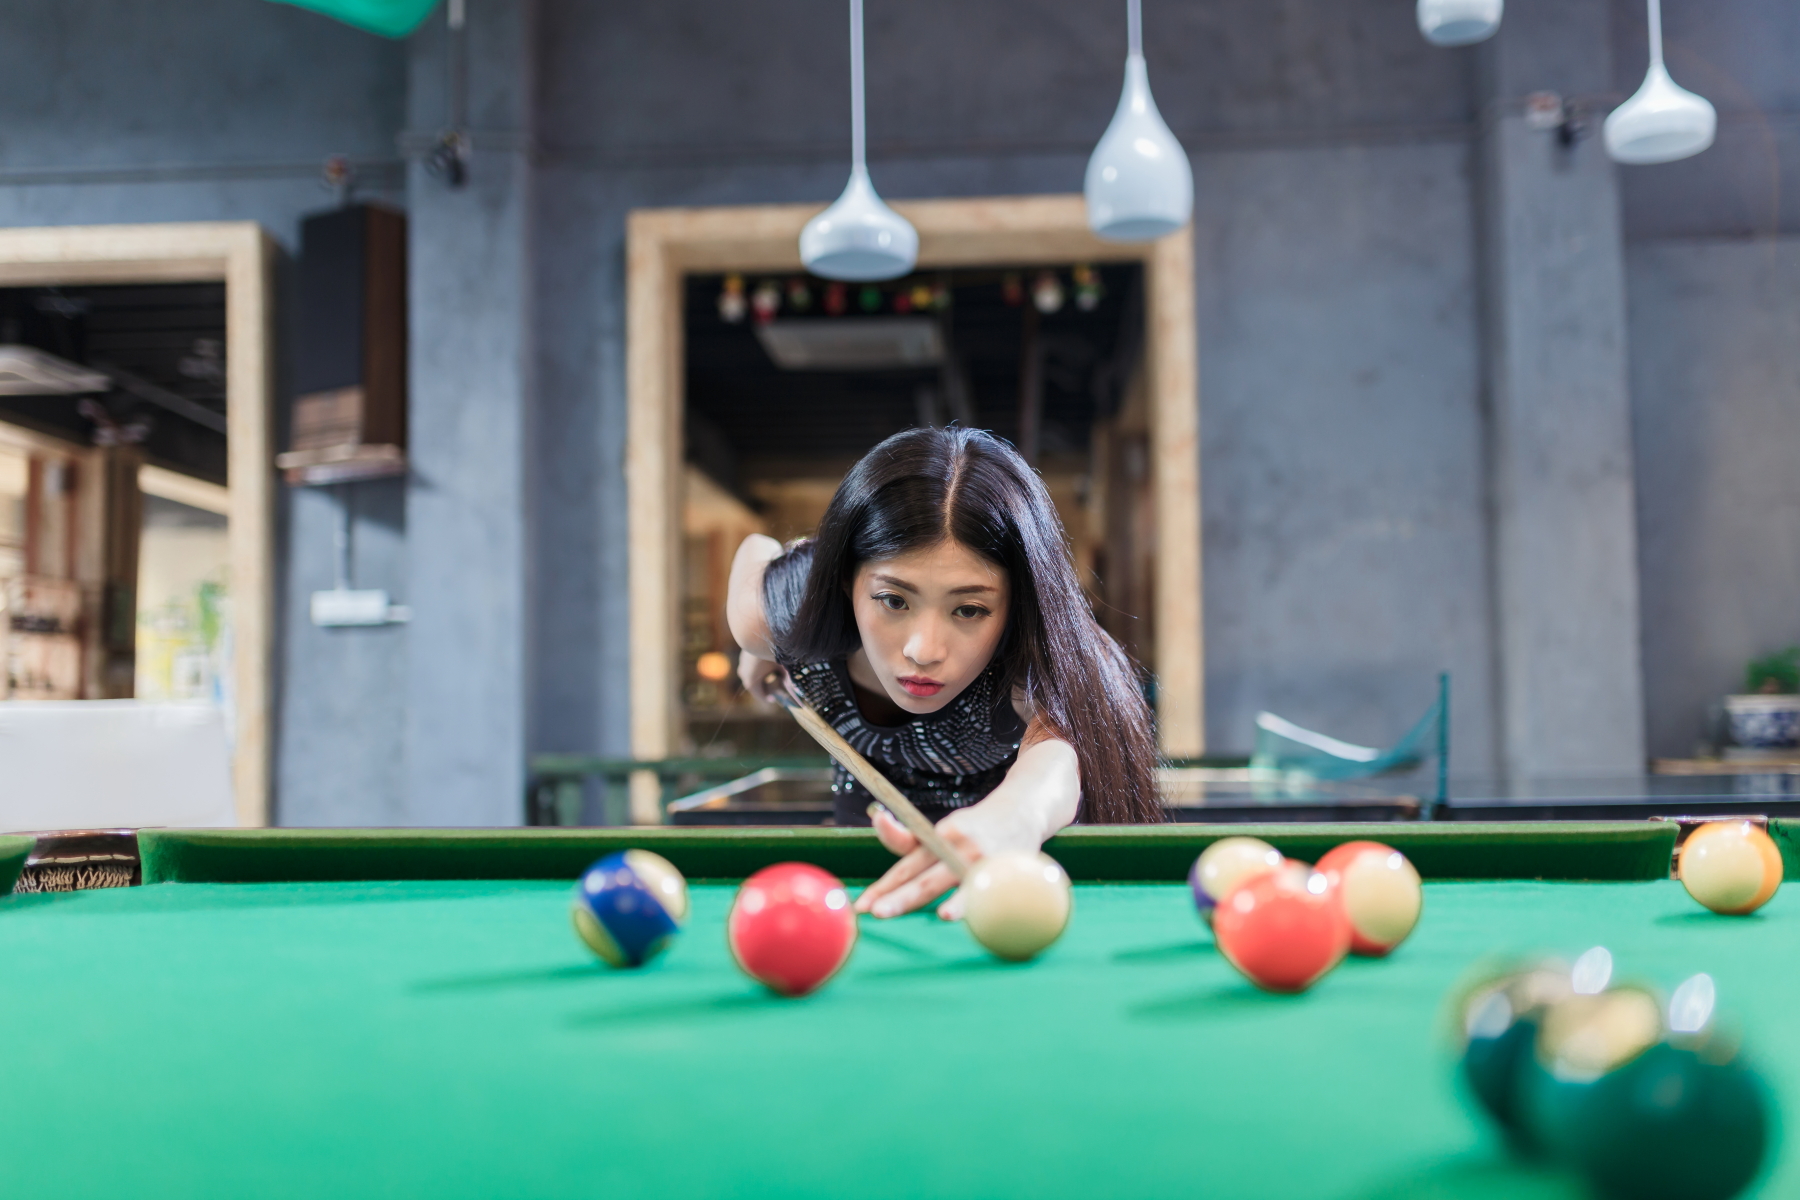 《女儿3》金晨卡斯柏约会打桌球 互动甜蜜气氛轻松 -- 眼界，放眼世界